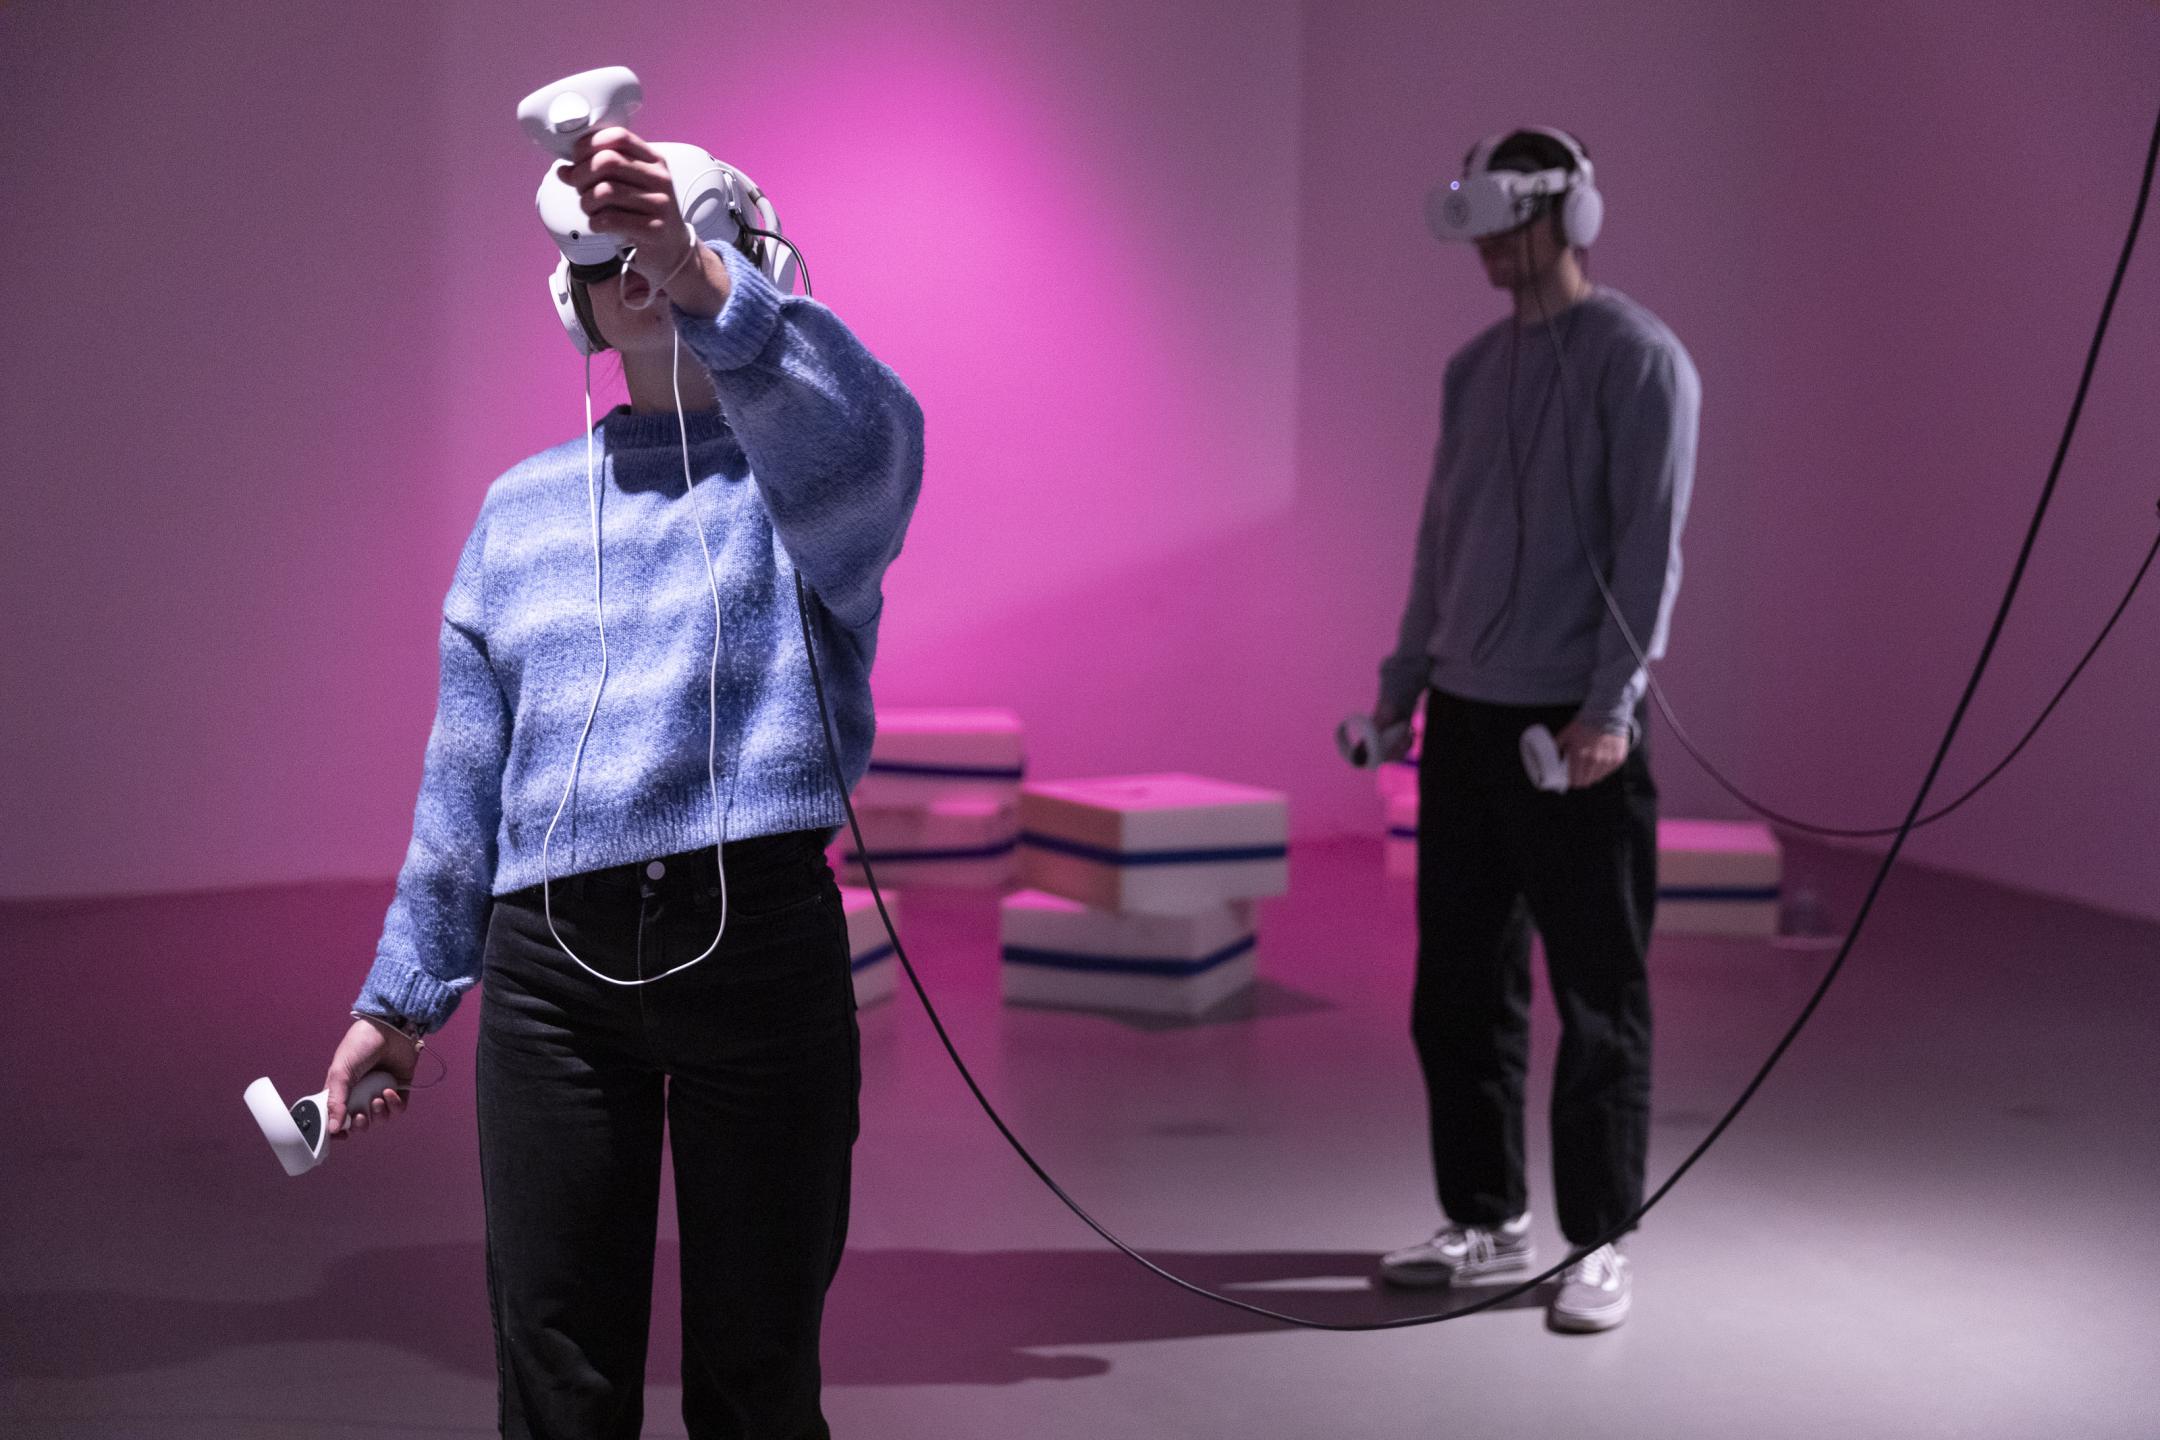 Zwei Personen mit VR-Brille stehen in einem fast leeren Raum.